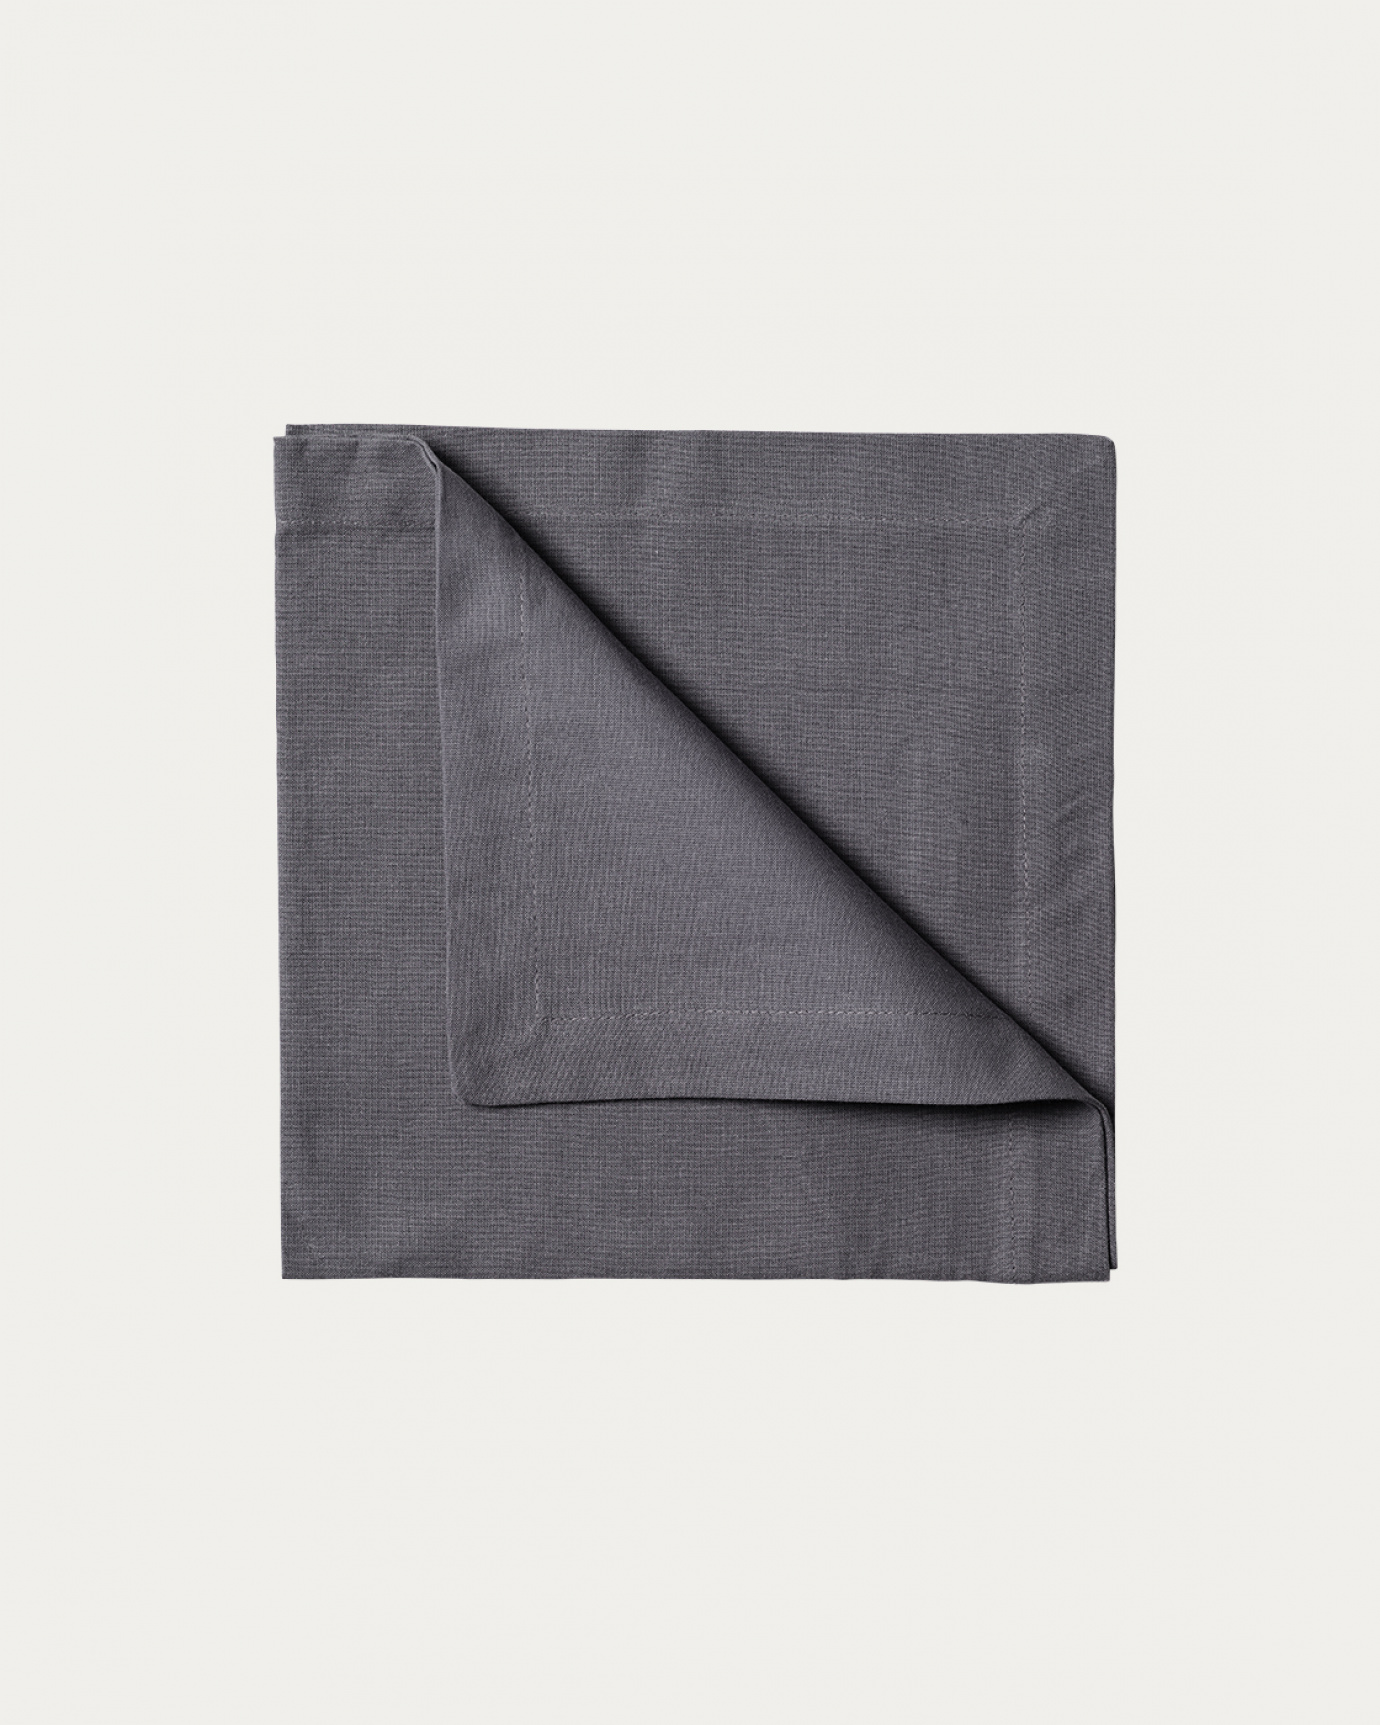 Image du produit serviette de table ROBERT gris foncé en coton doux de LINUM DESIGN. Taille 45 x 45 cm et vendu en lot de 4.